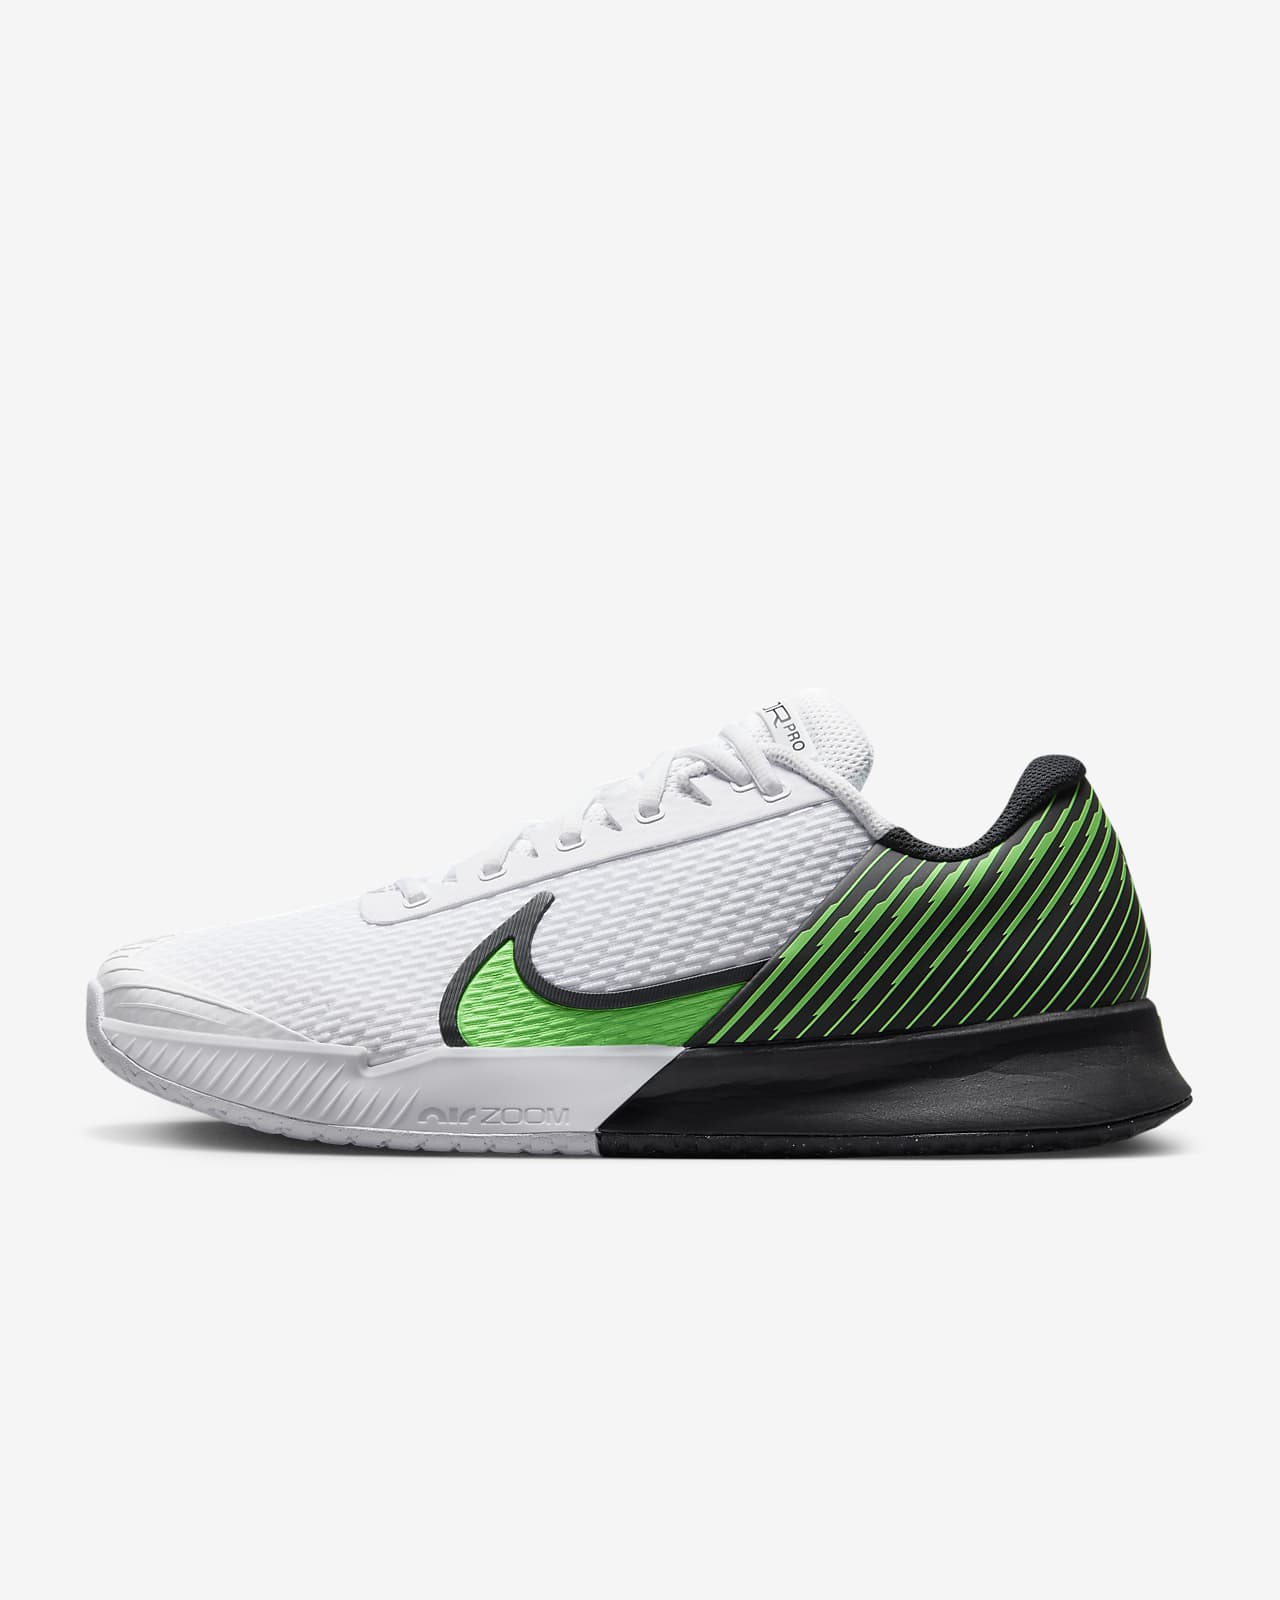 Nike Vapor Pro 2 - Chaussure tennis homme 2023-2024 coloris noir